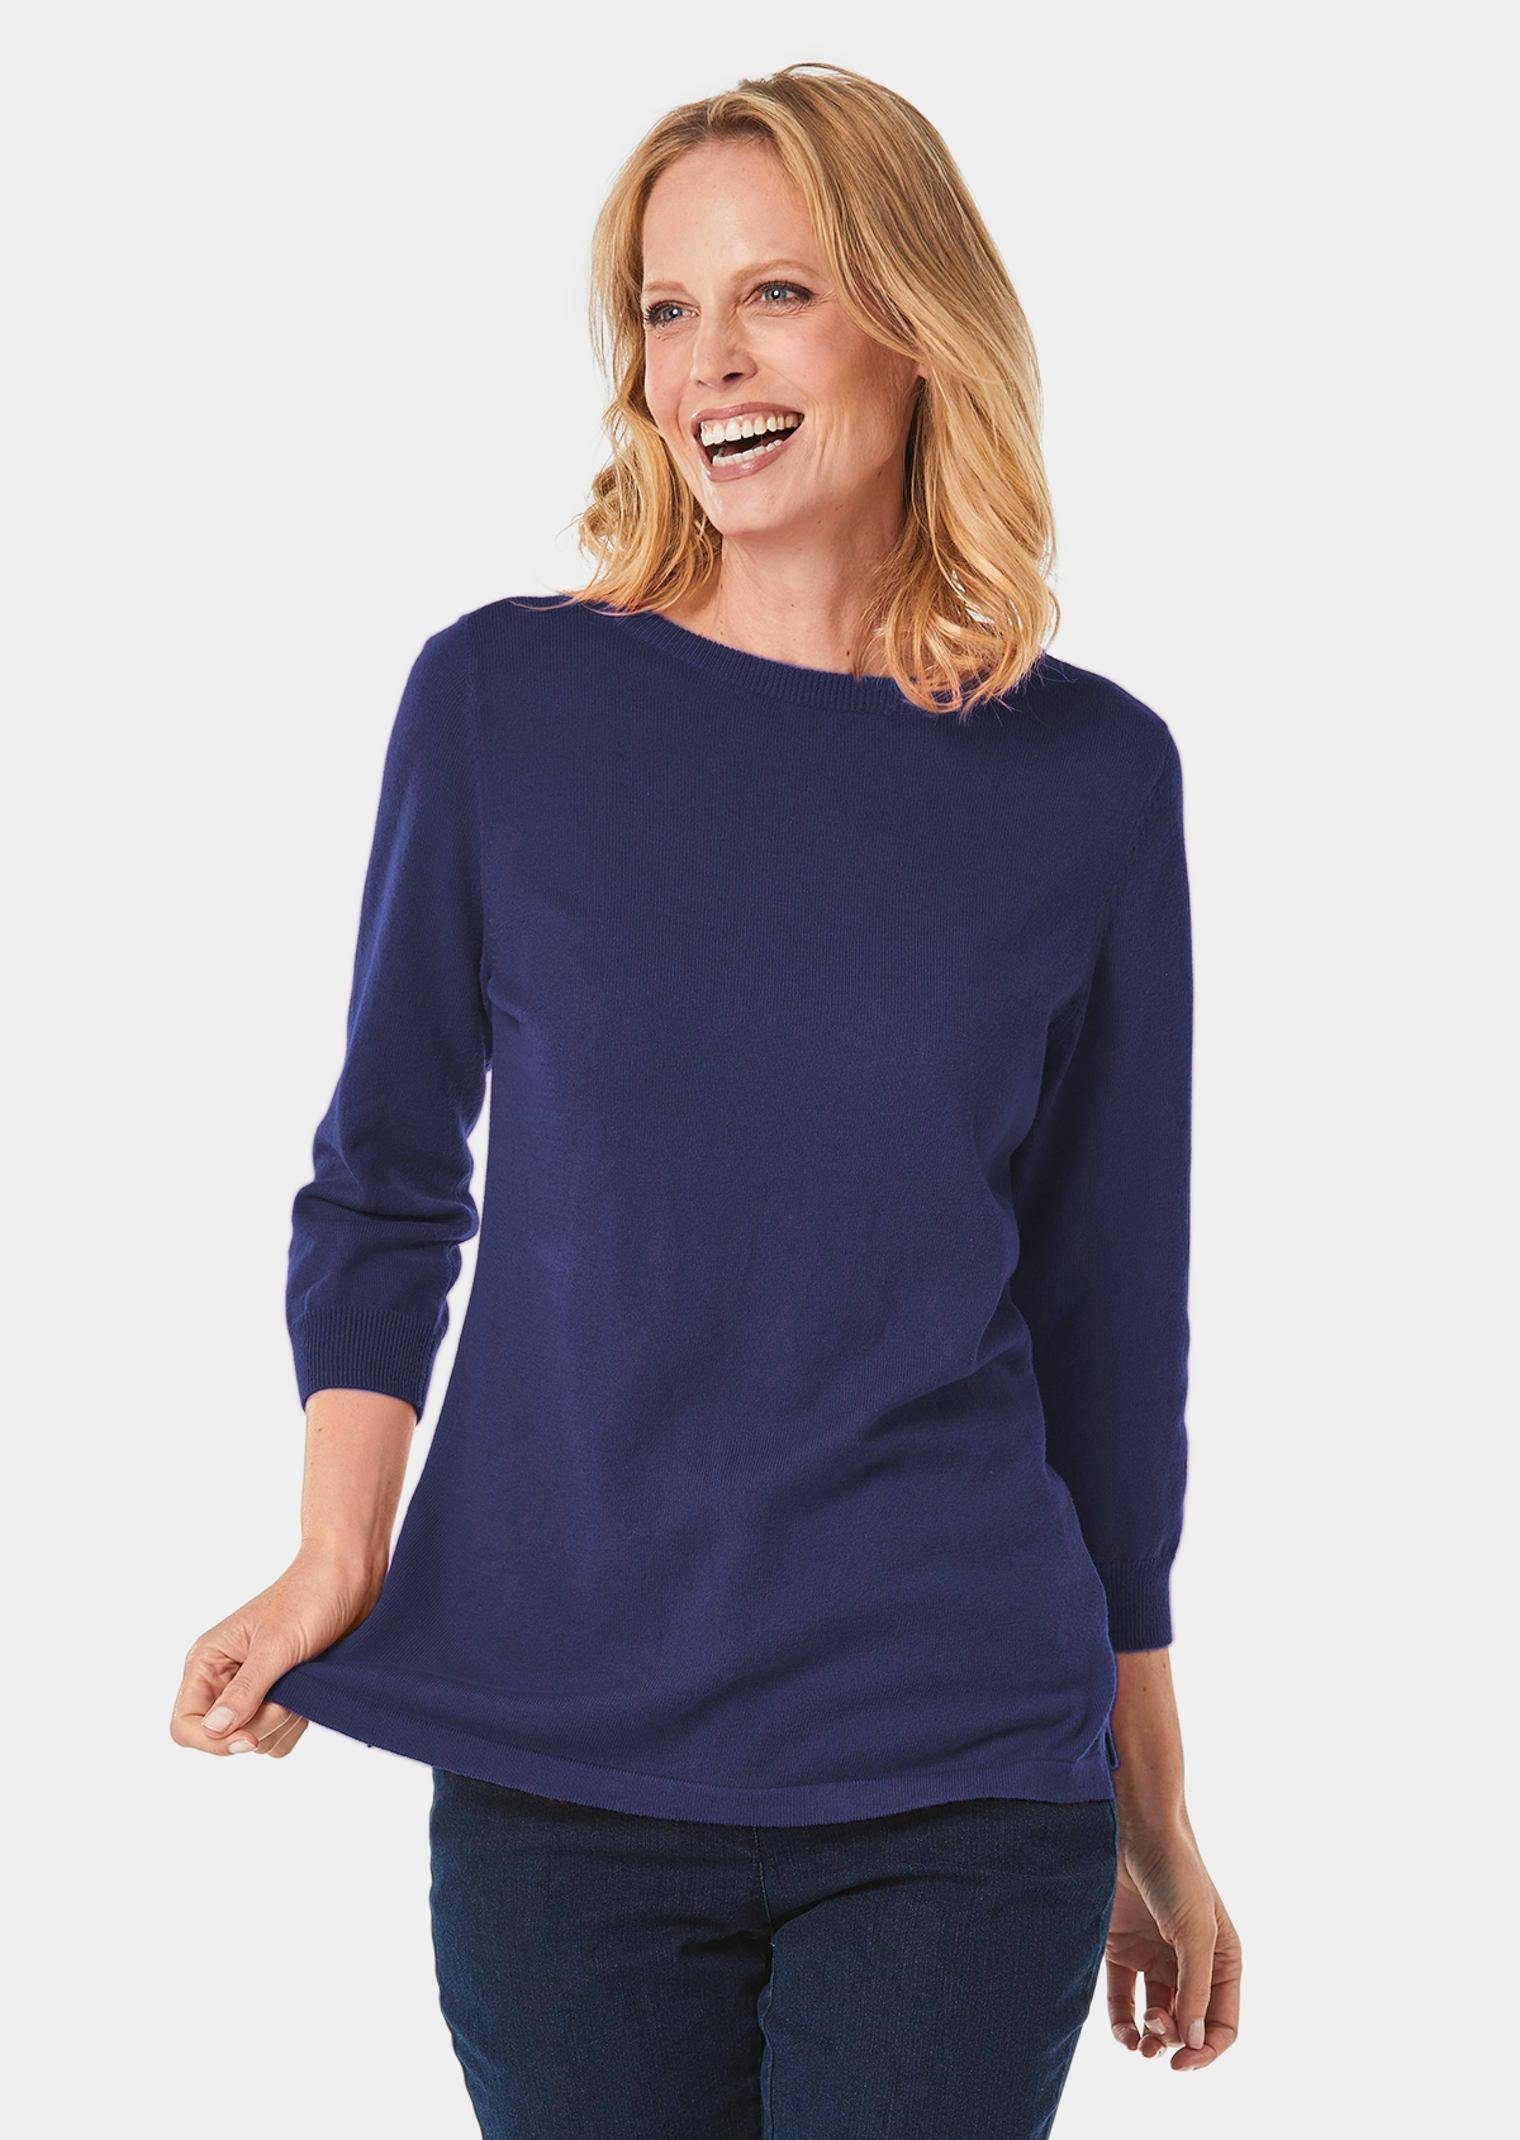 GOLDNER Strickpullover Kurzgröße: Pullover aus hochwertigem Garn tintenblau